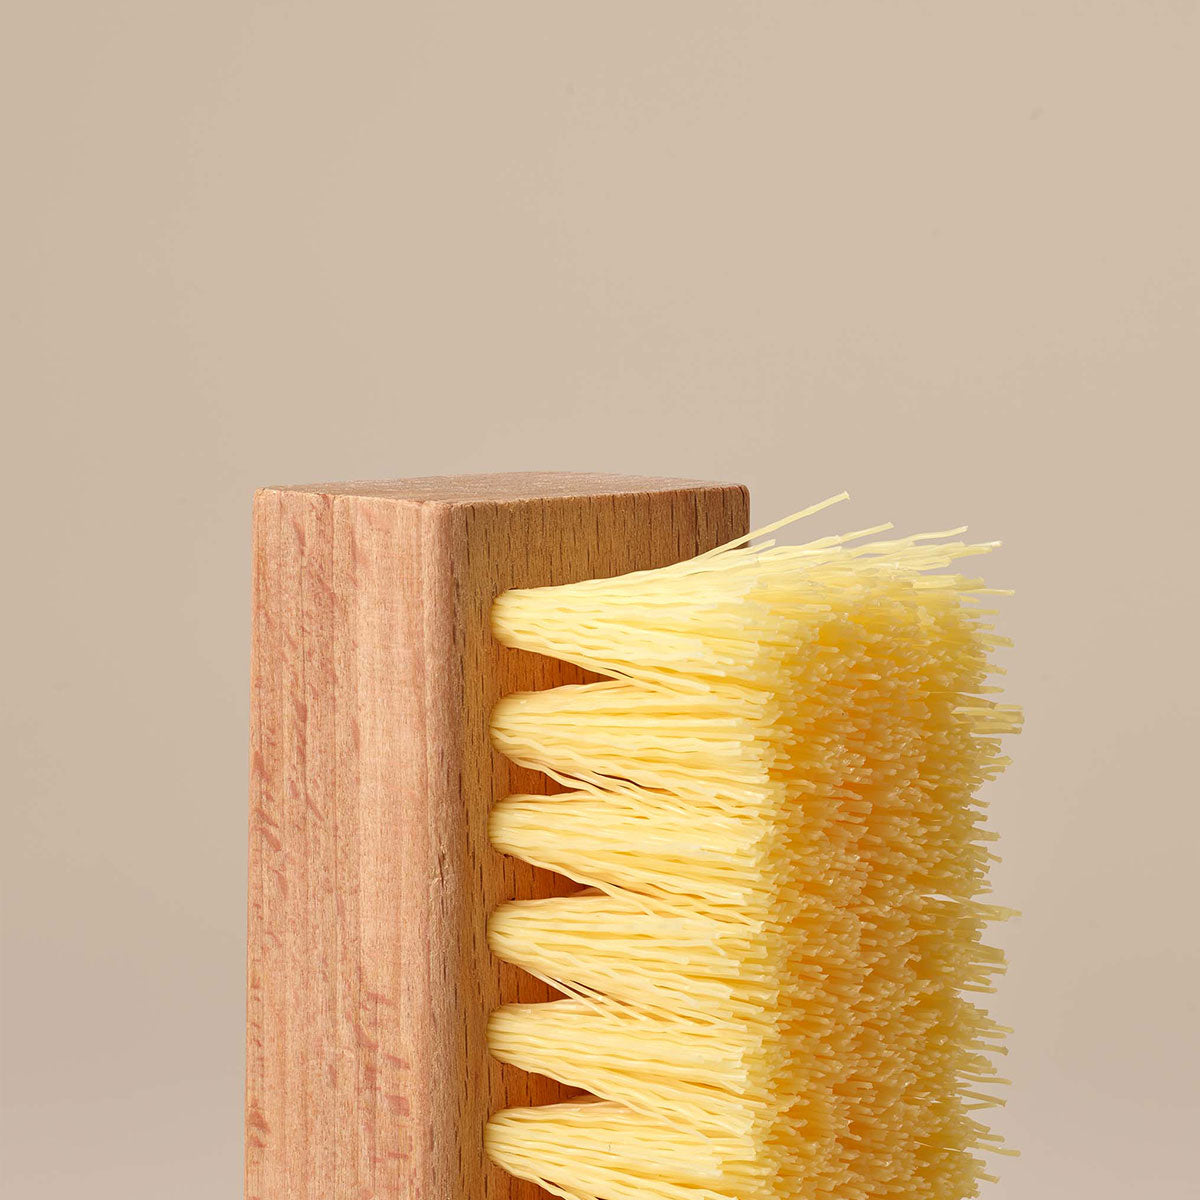 Cepillo Estándar de Limpieza de Calzado "Standard Cleaning Brush" - Limpiadores de Calzado Jason Markk